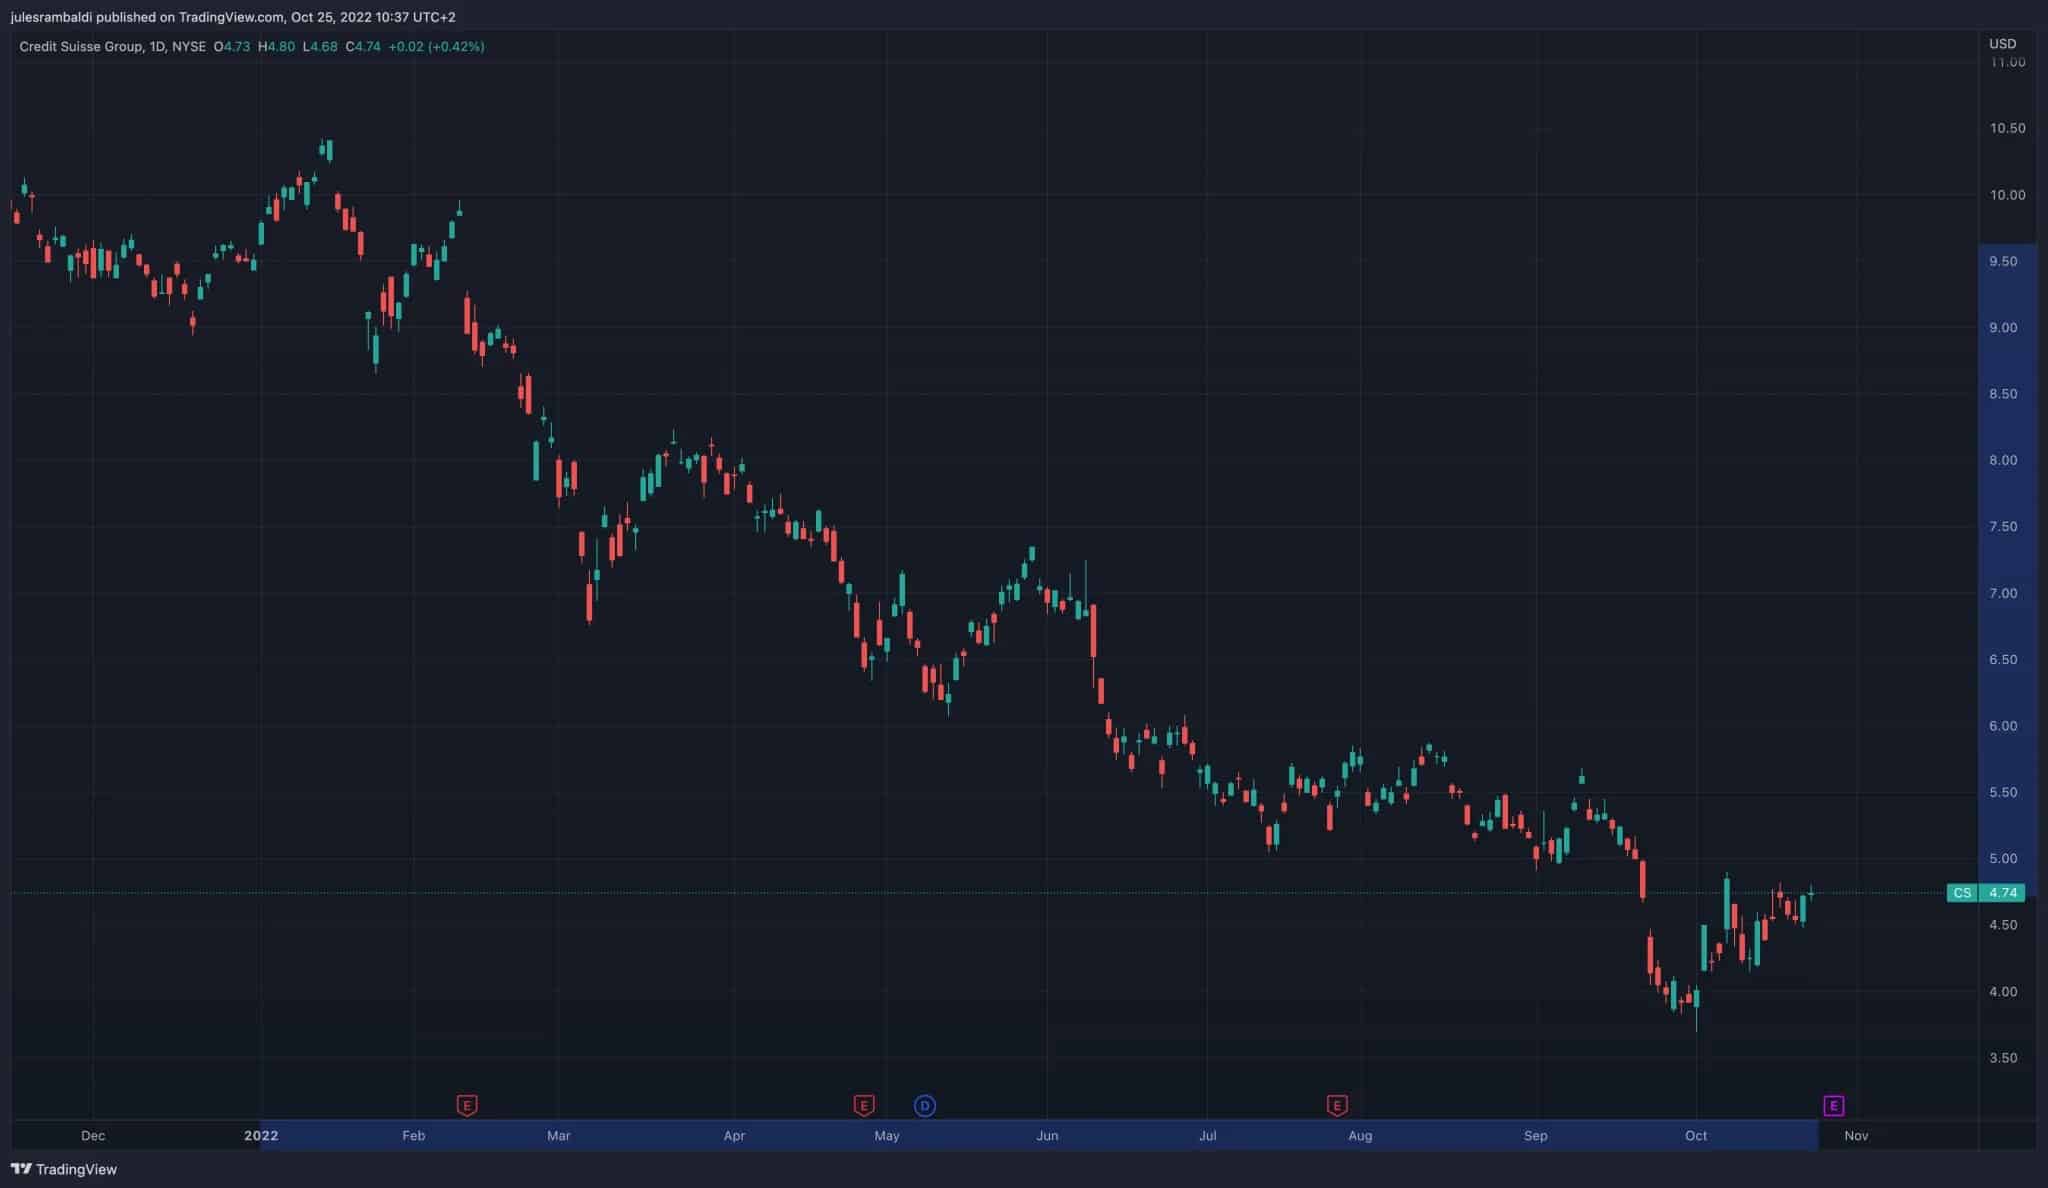 2021年12月以降のクレディ・スイスの株価推移